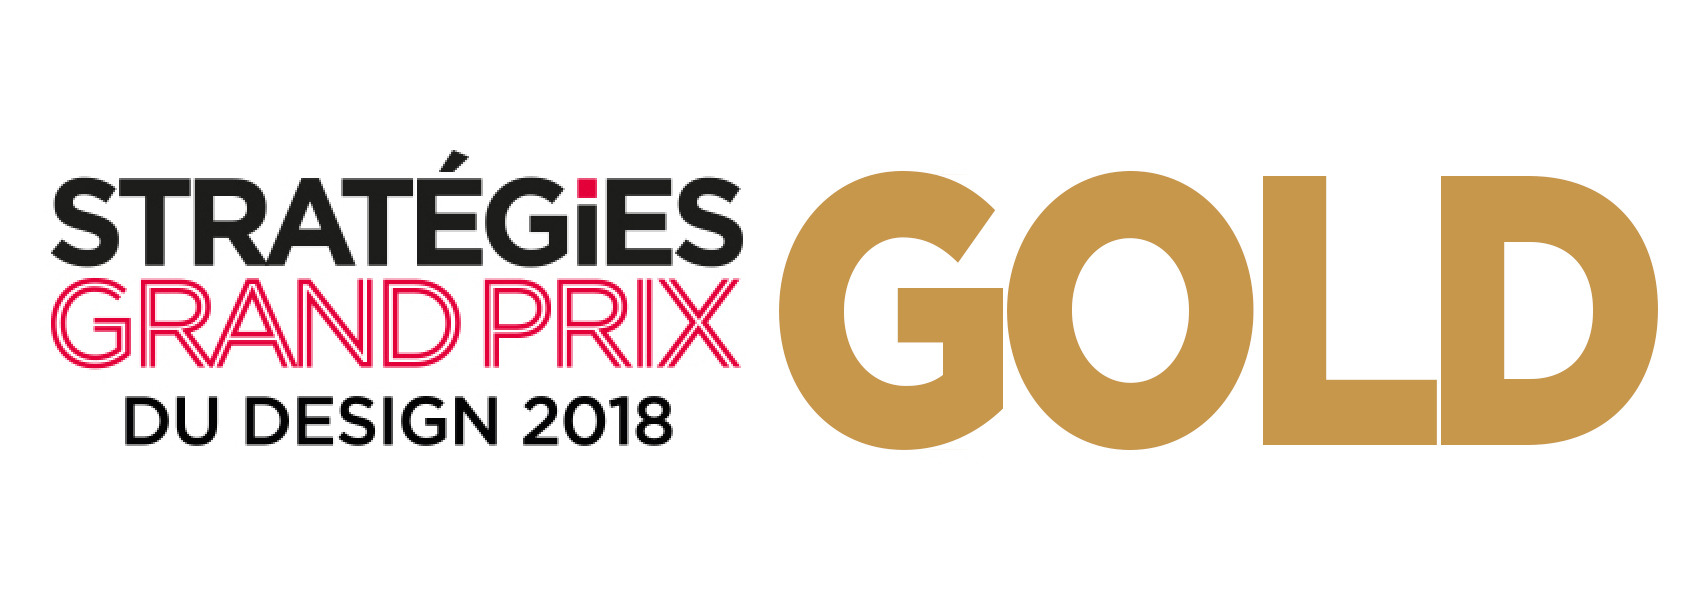 金奖 - GRAND PRIX STRATÉGIES DU DESIGN 2018